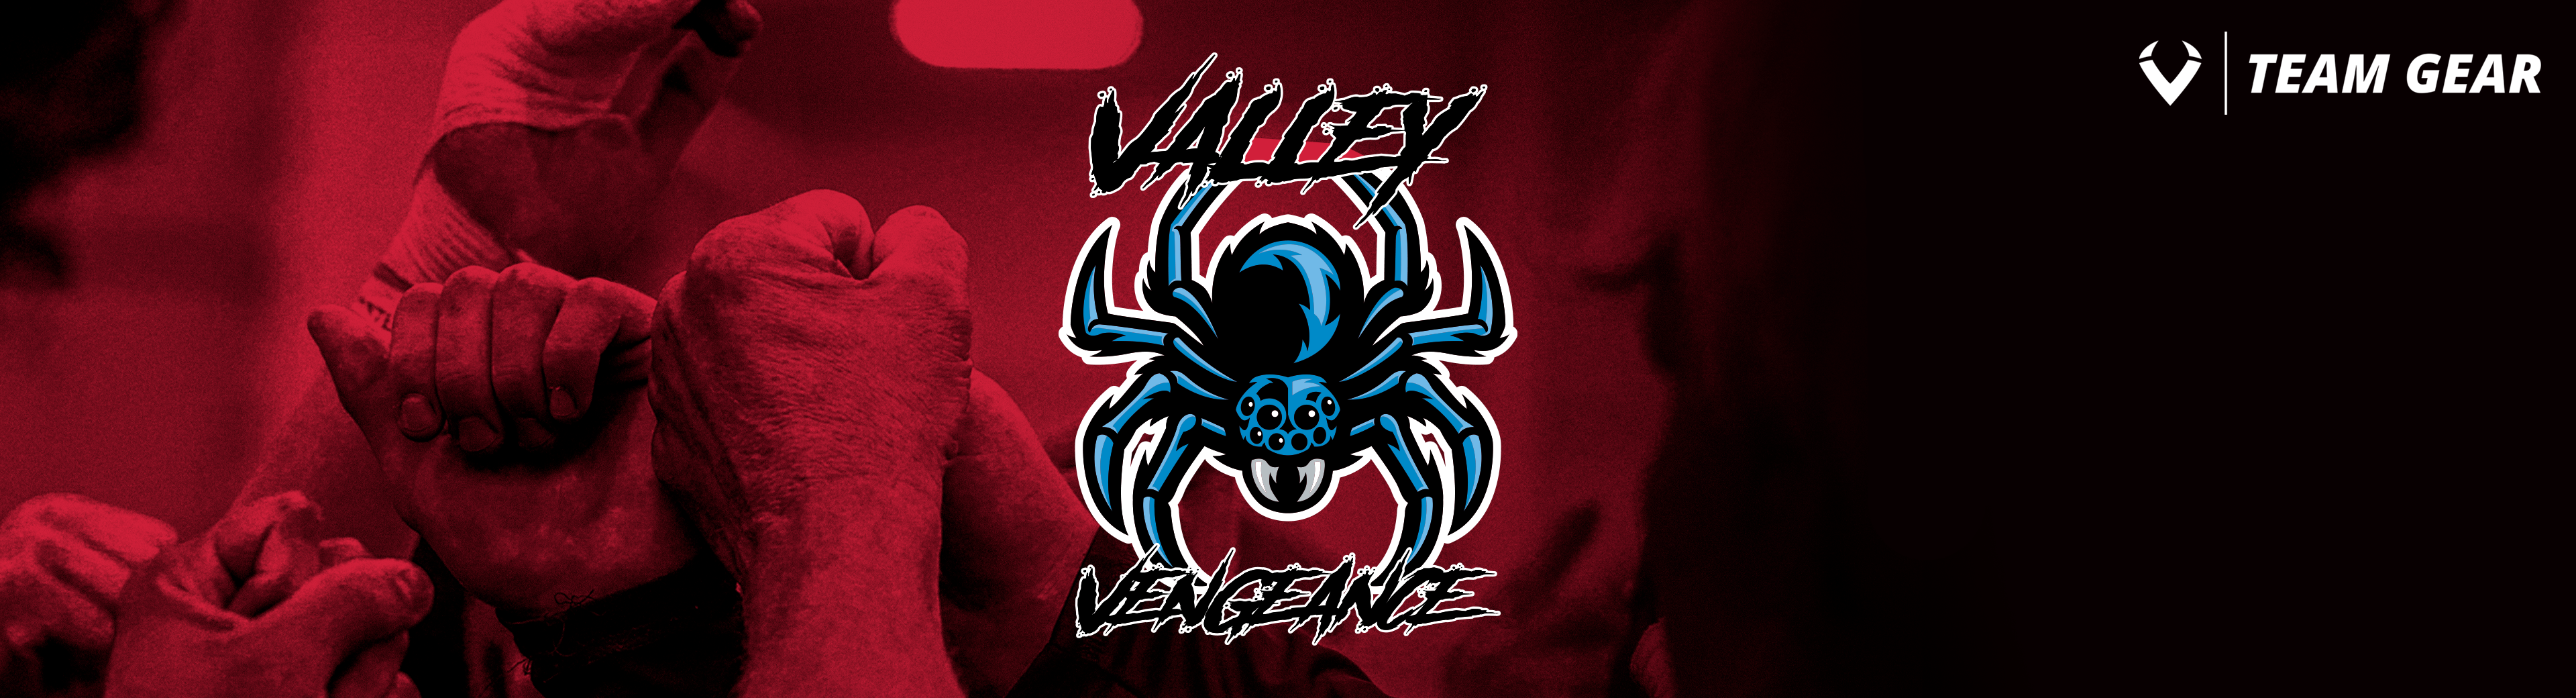 Valley Vengeance (WV)